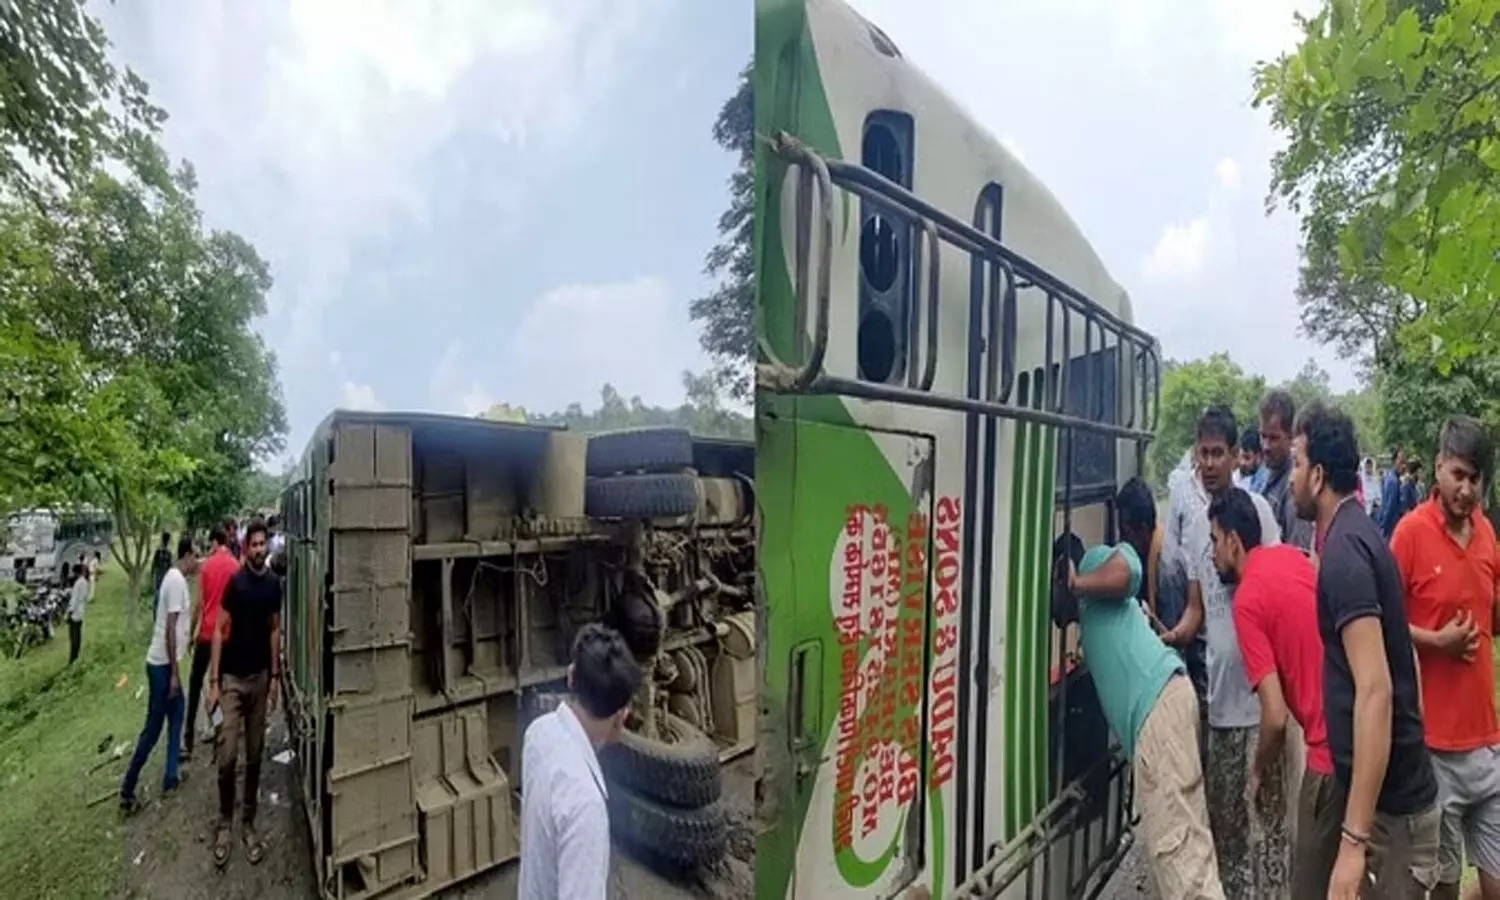 Shahdol Bus Accident: एमपी के शहडोल से रीवा आ रही बस पलटी, दर्जन भर यात्री हुए घायल